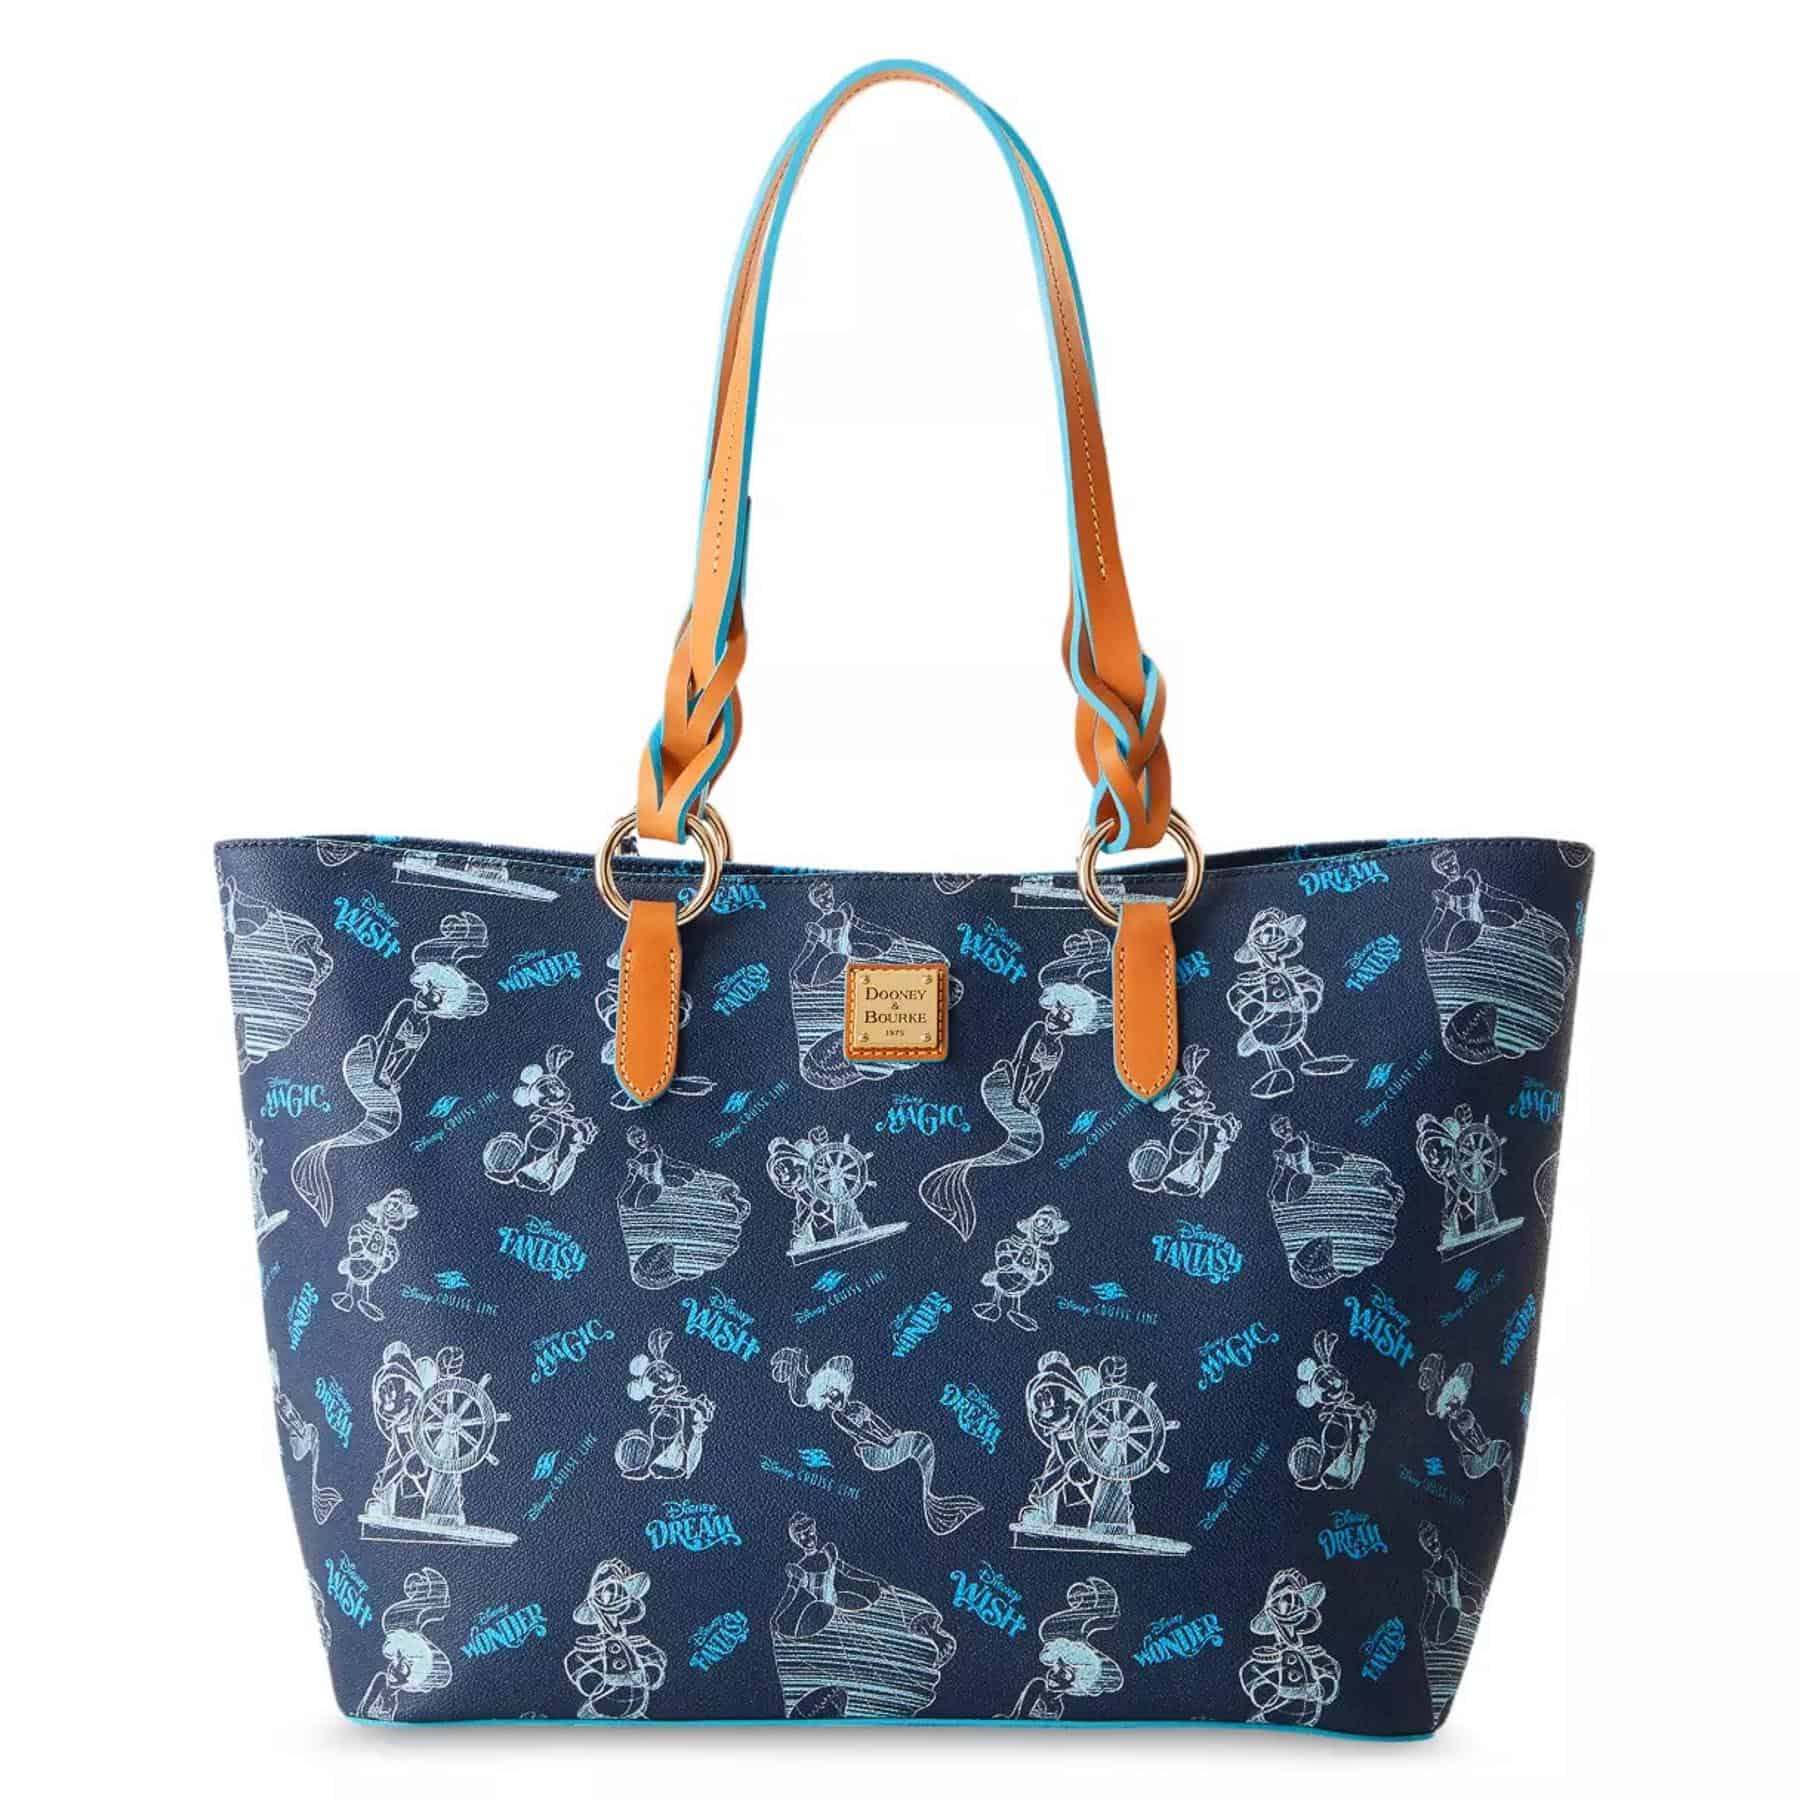 Disney Dooney & Bourke Bag - The Disney Steeds - Satchel